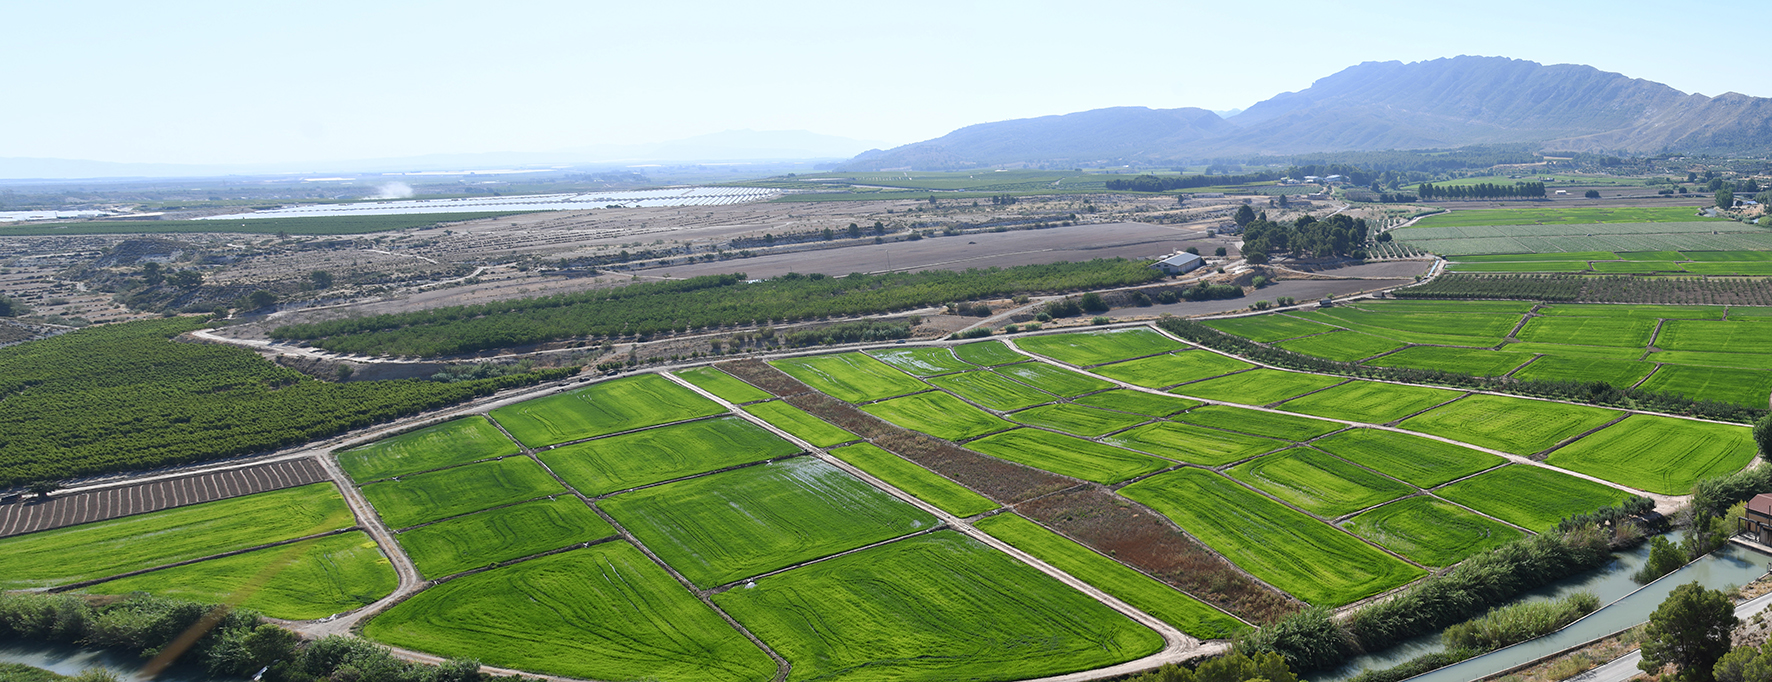 Cultivos de arroz en Calasparra incluidos dentro del proyecto de monitorización de ayudas de la Política Agraria Común